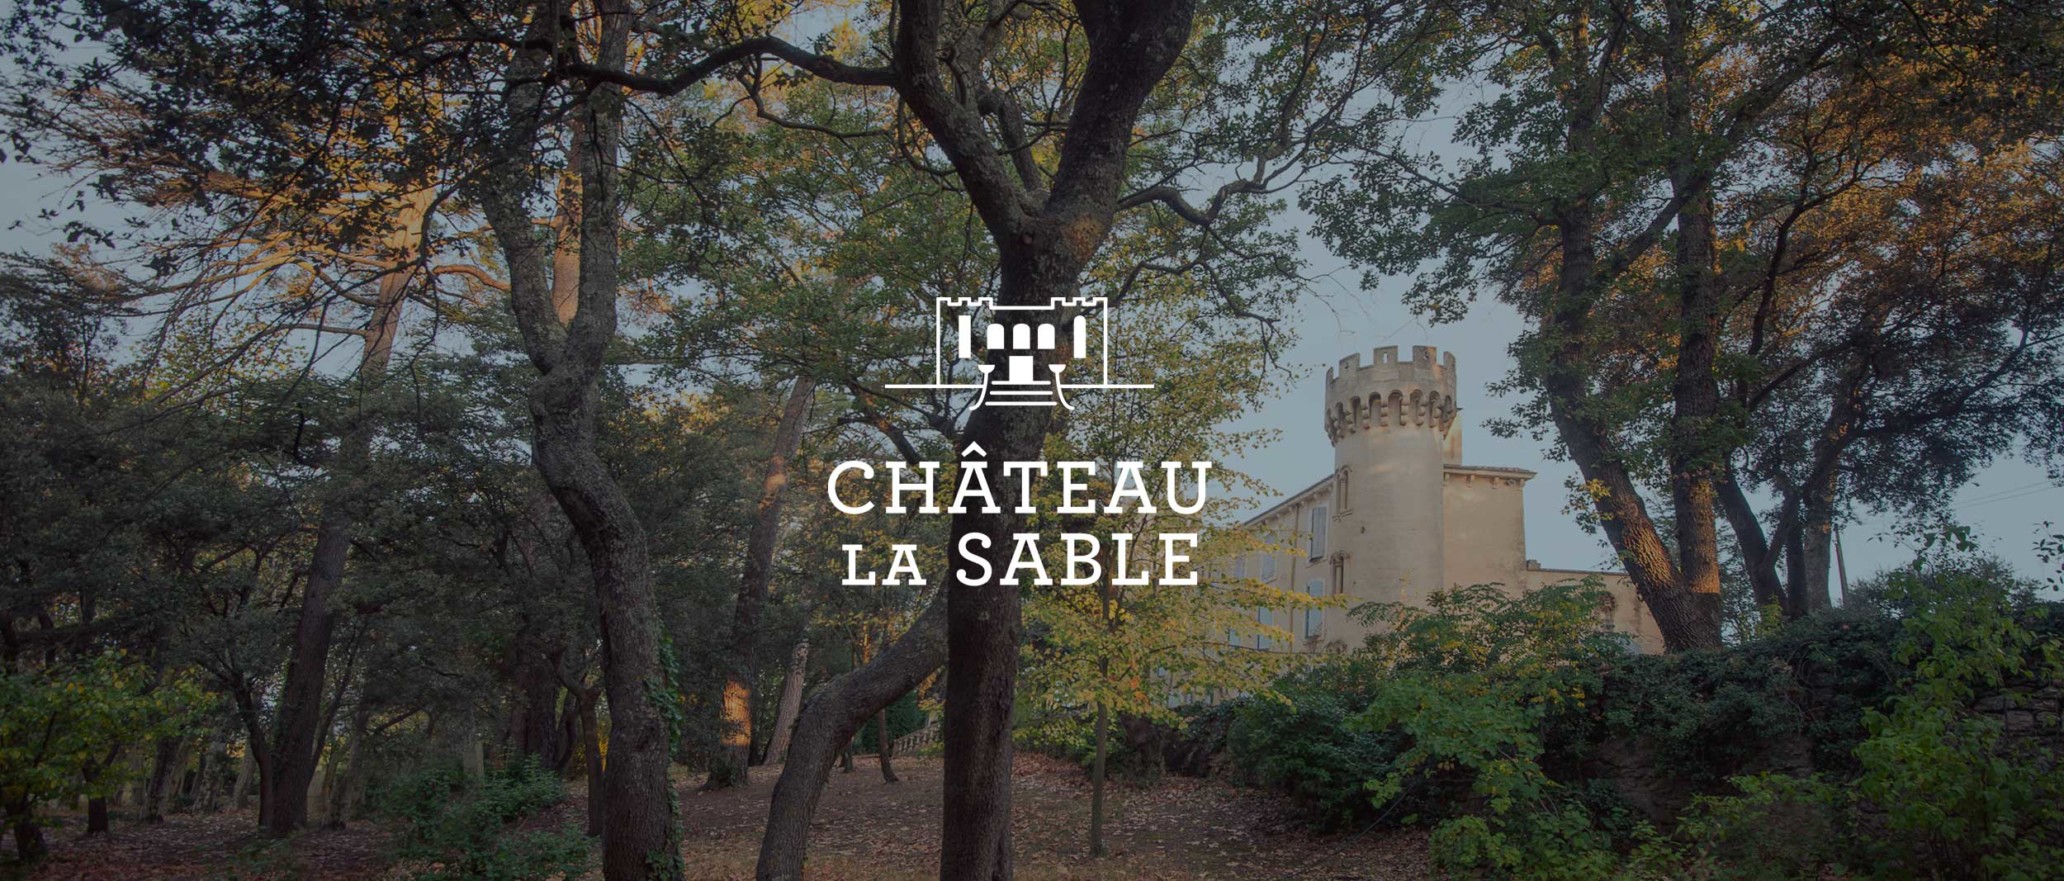 Chateau La Sable Luberon Rosé